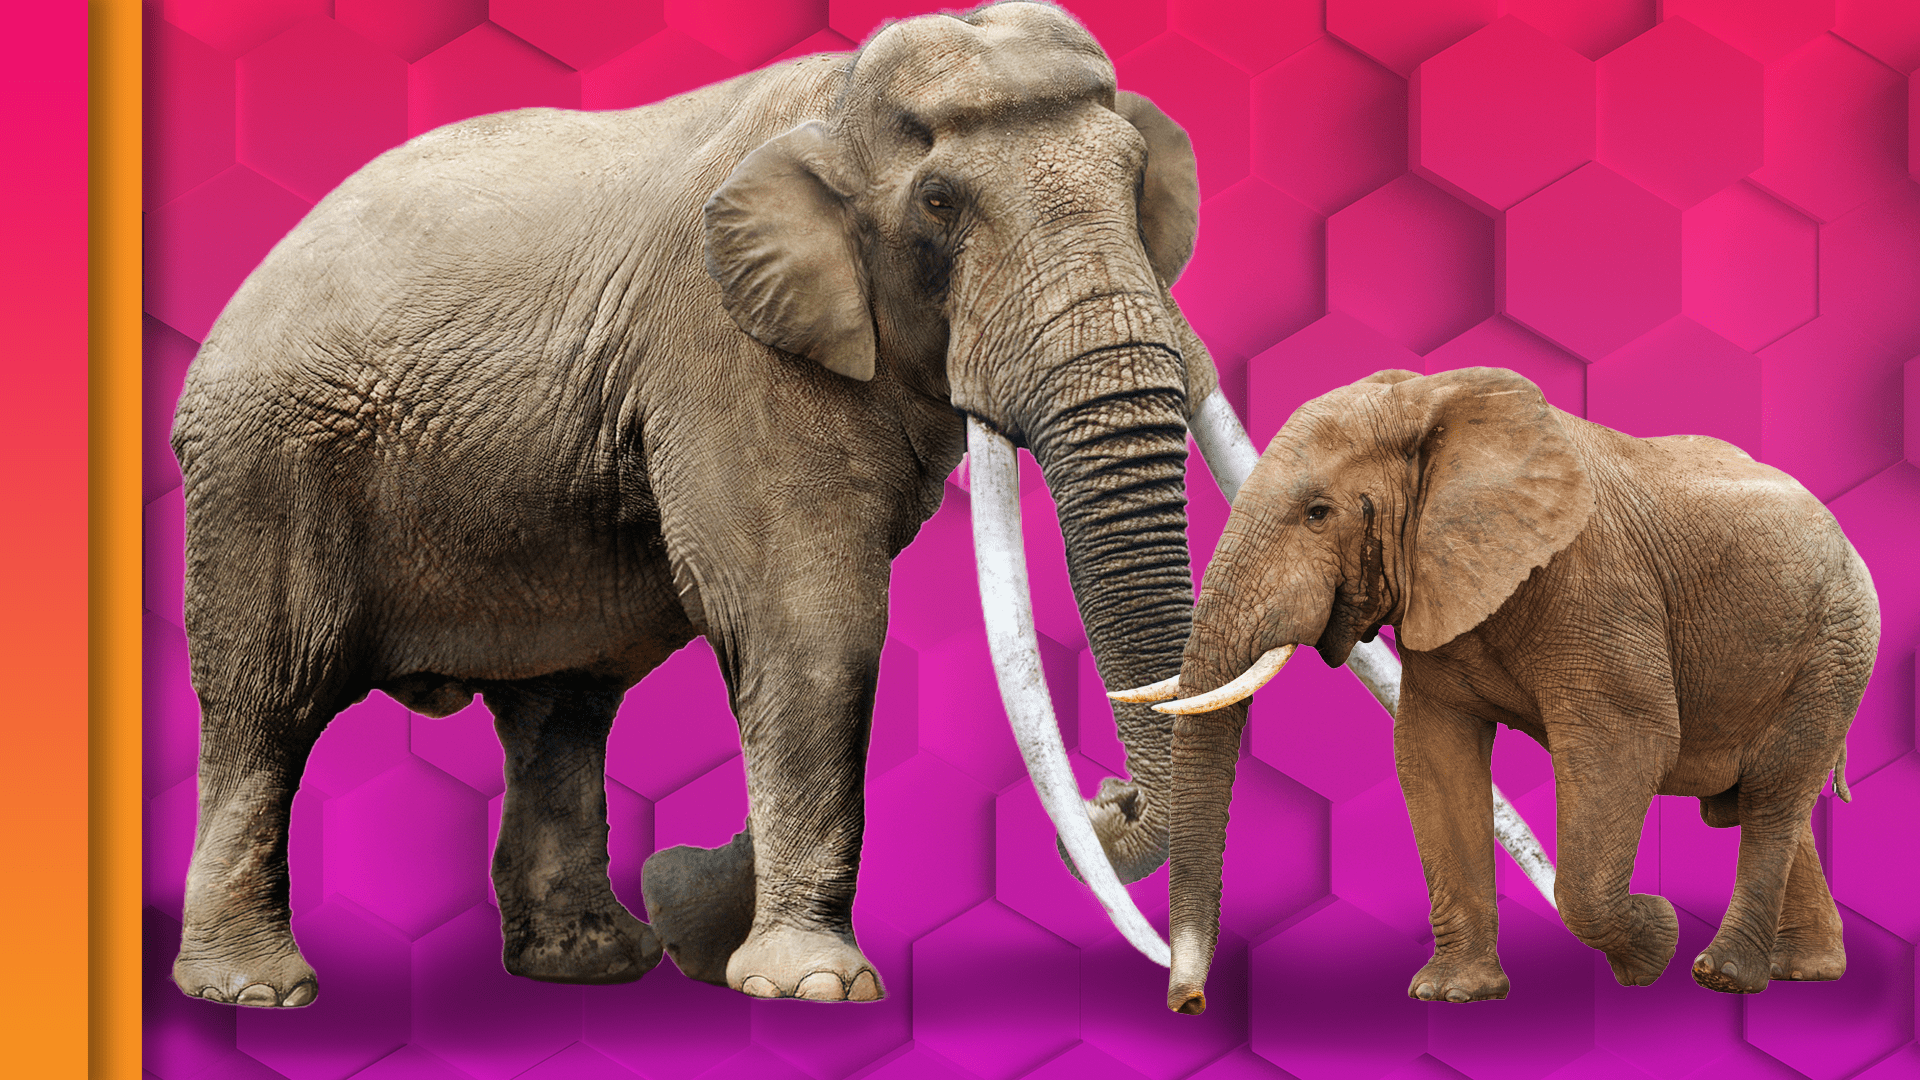 Secrets of the Elephants series reveals a unique, dynamic animal culture